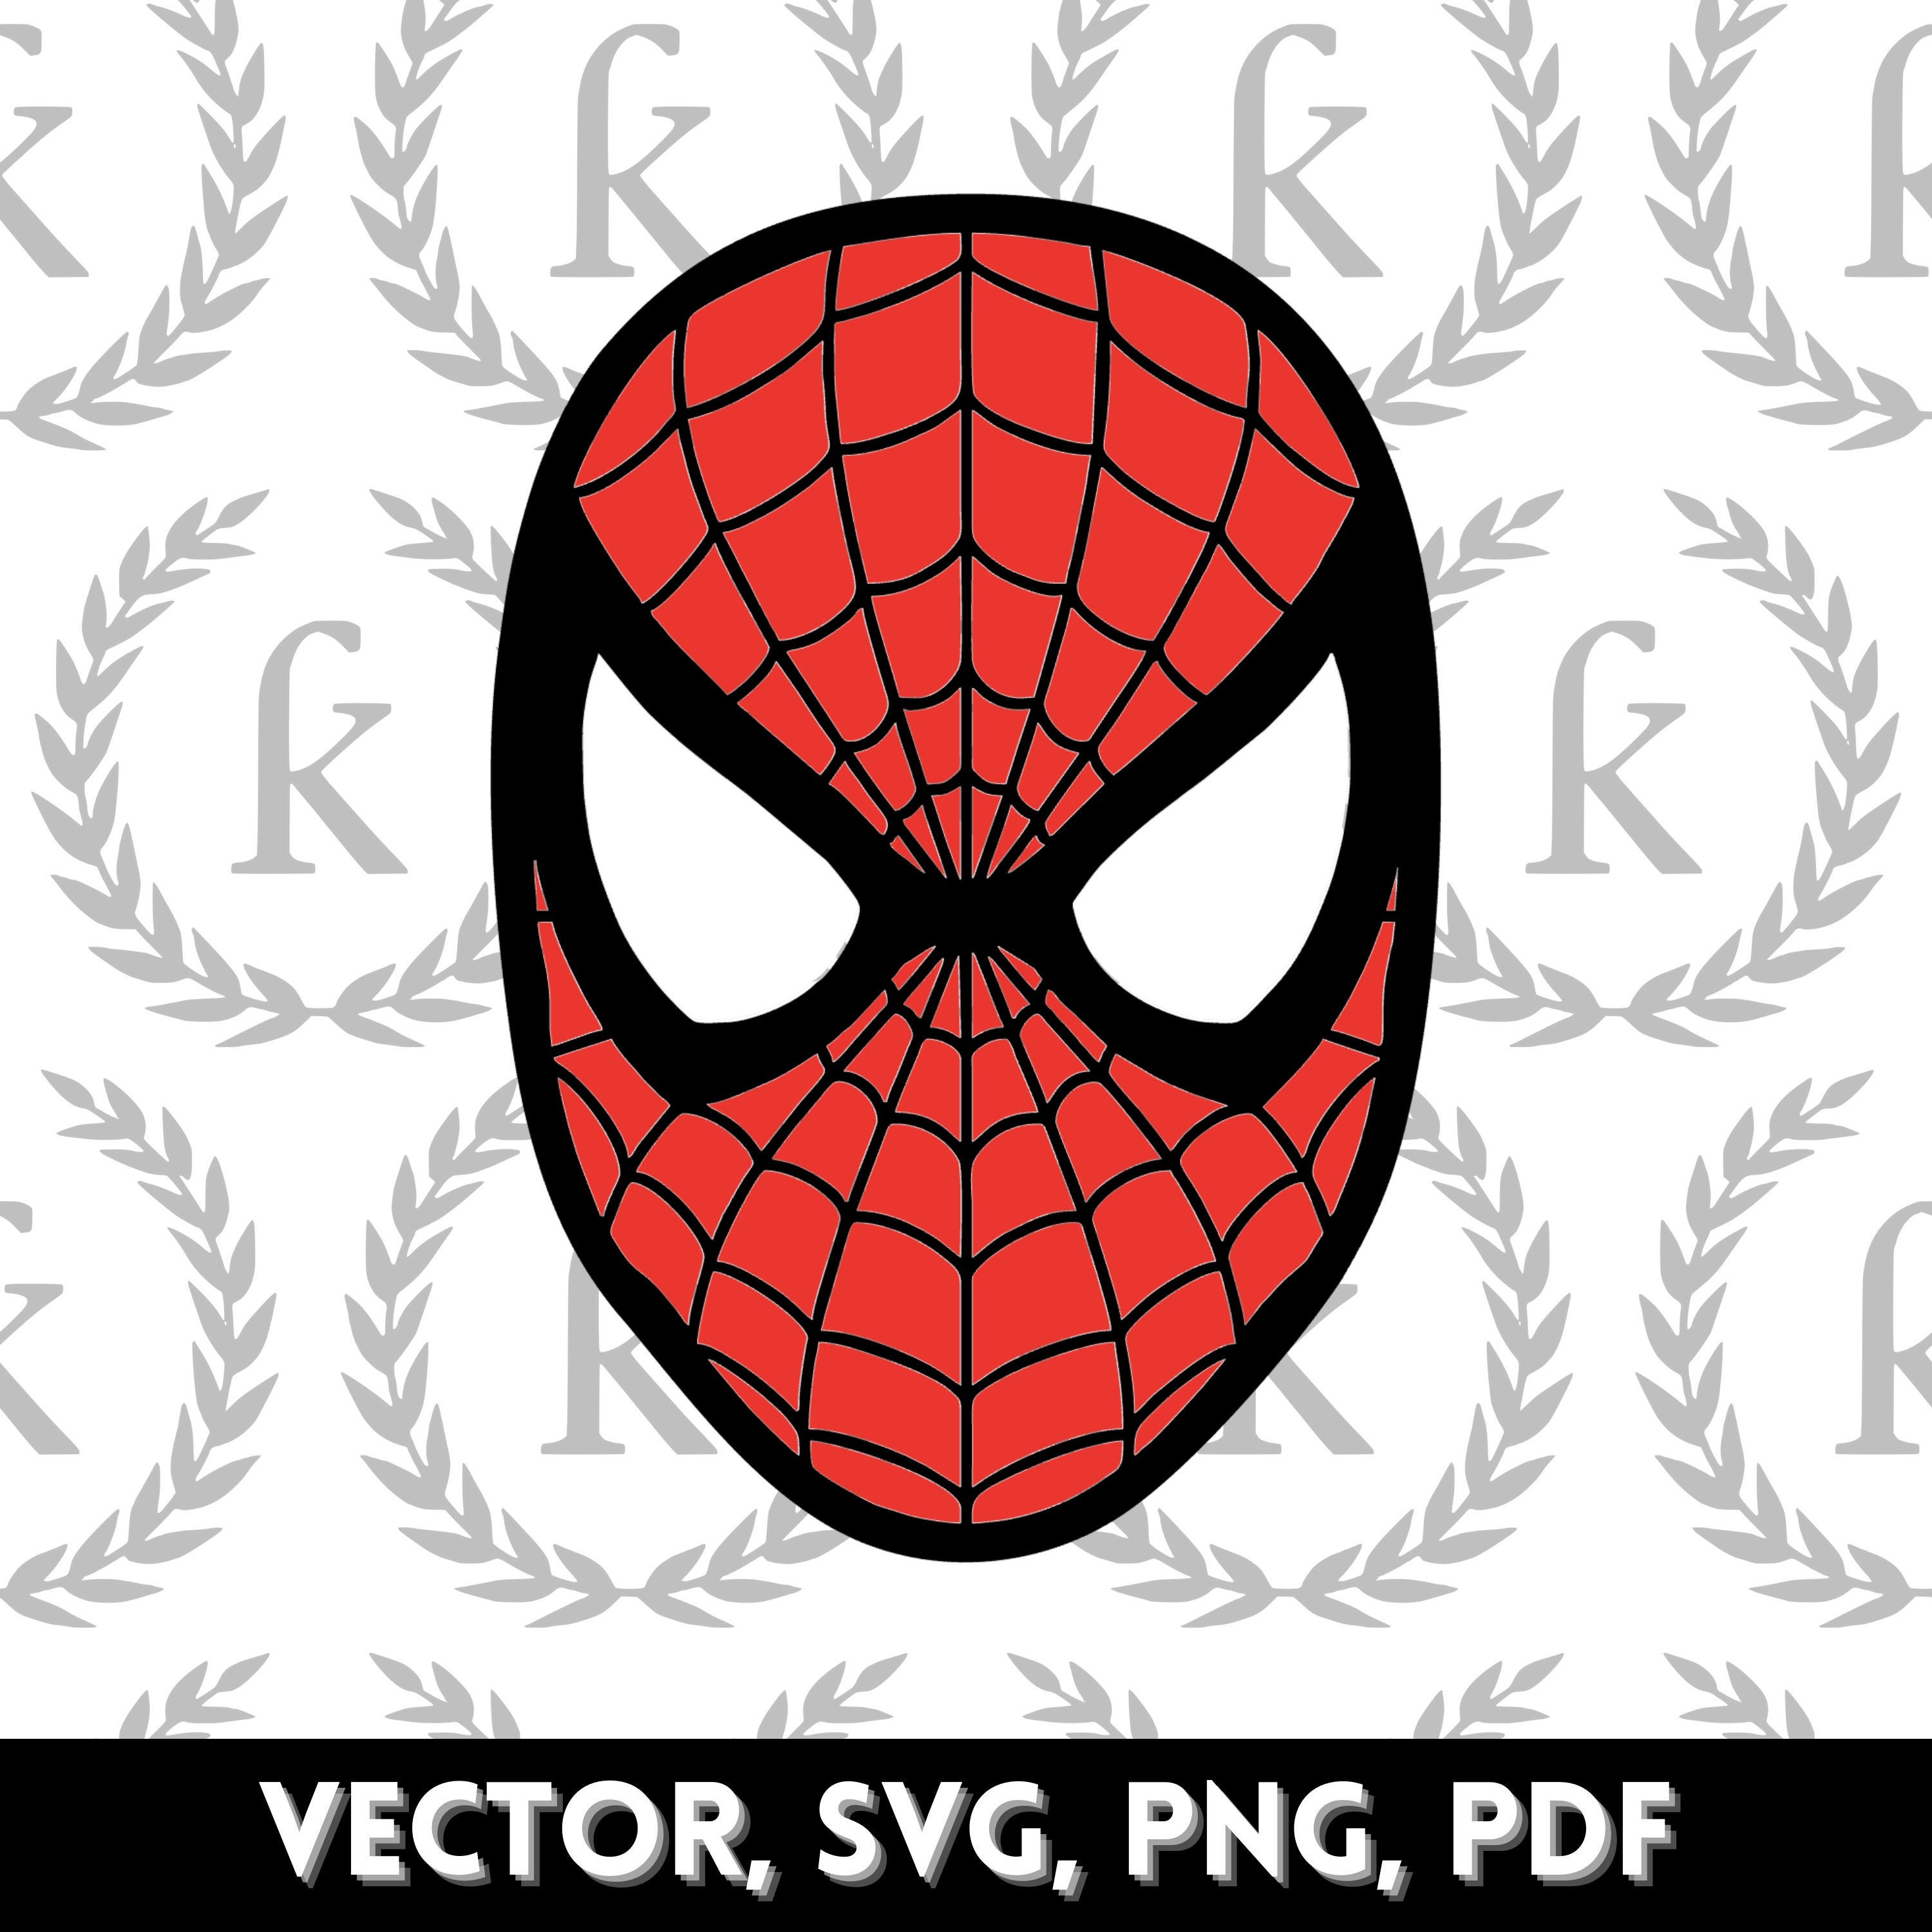 Spider-man Face PNG SVG Vector Cut File Digital Download | Etsy